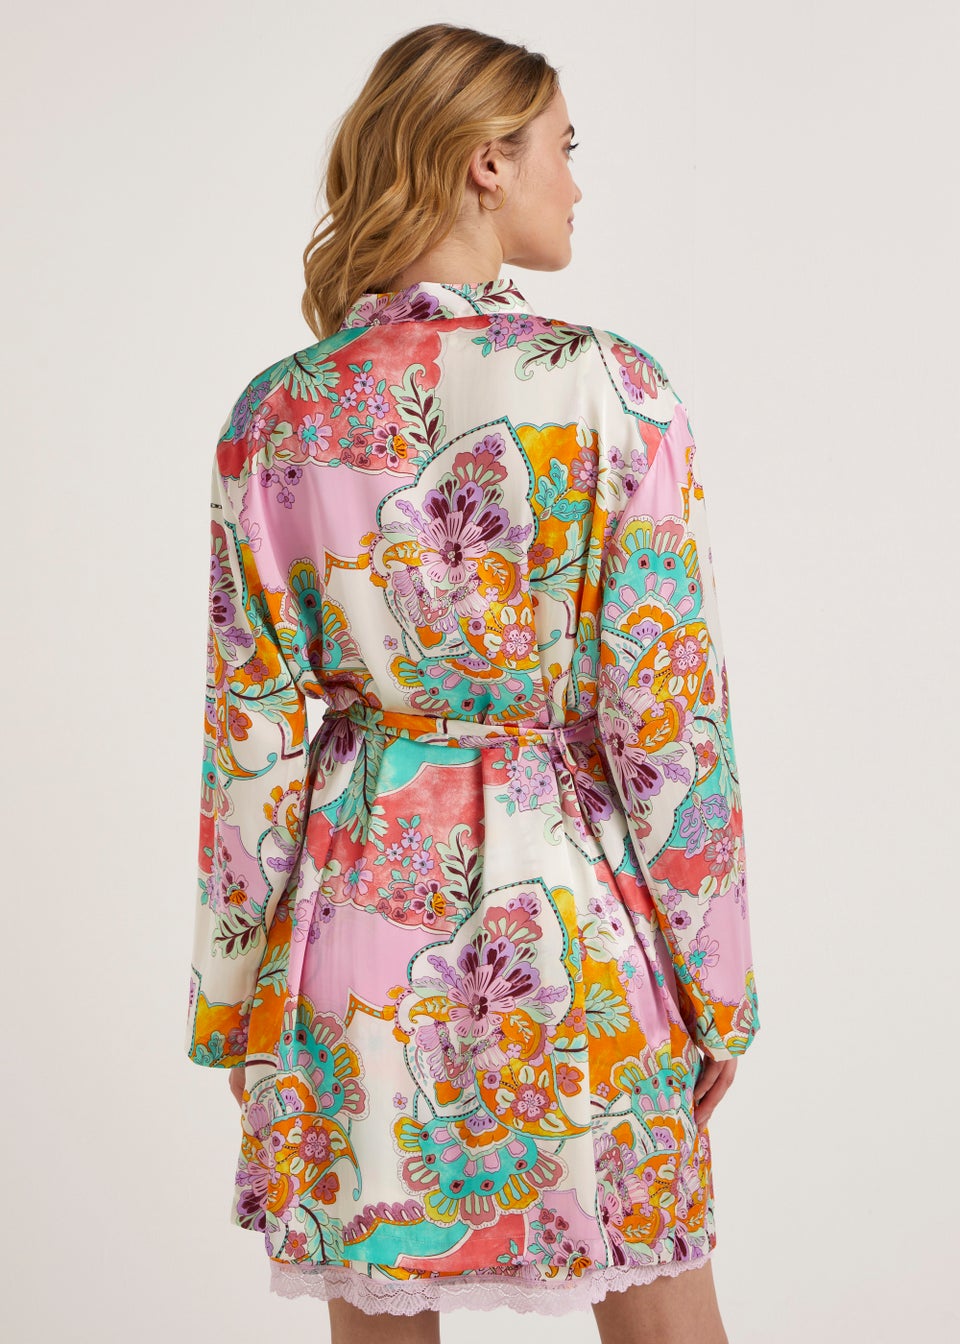 Kimono Robe  Buy Kimono Robe online in India